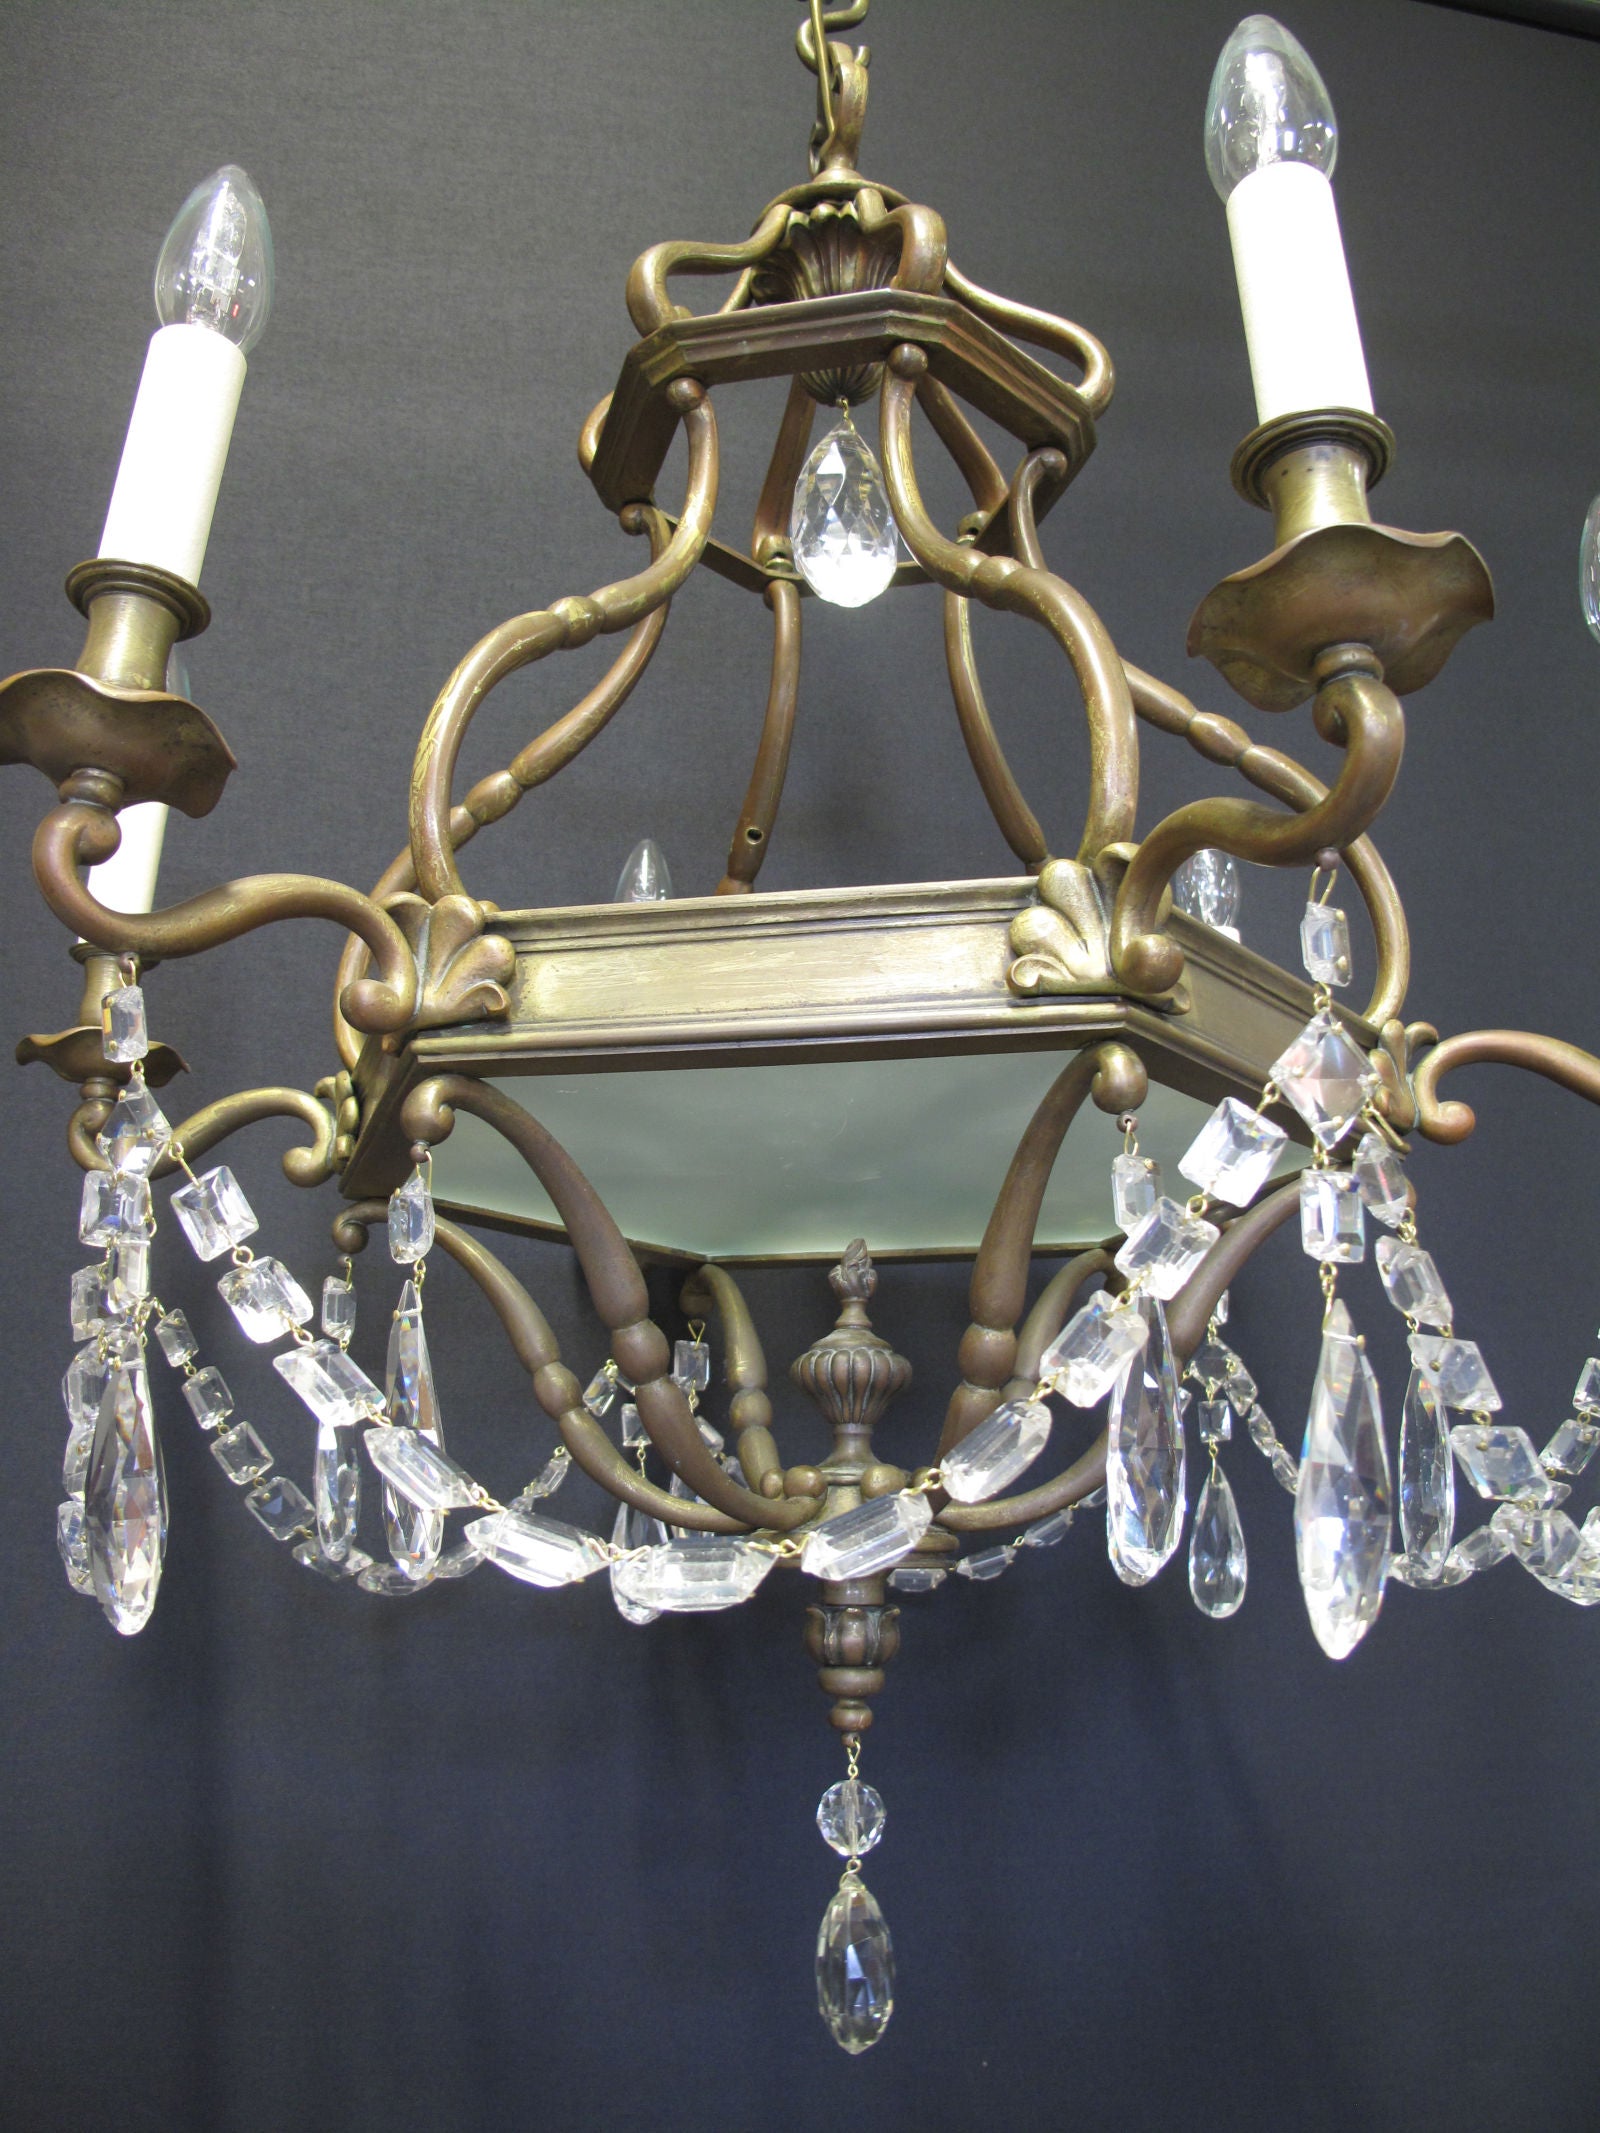 chandelier from below 